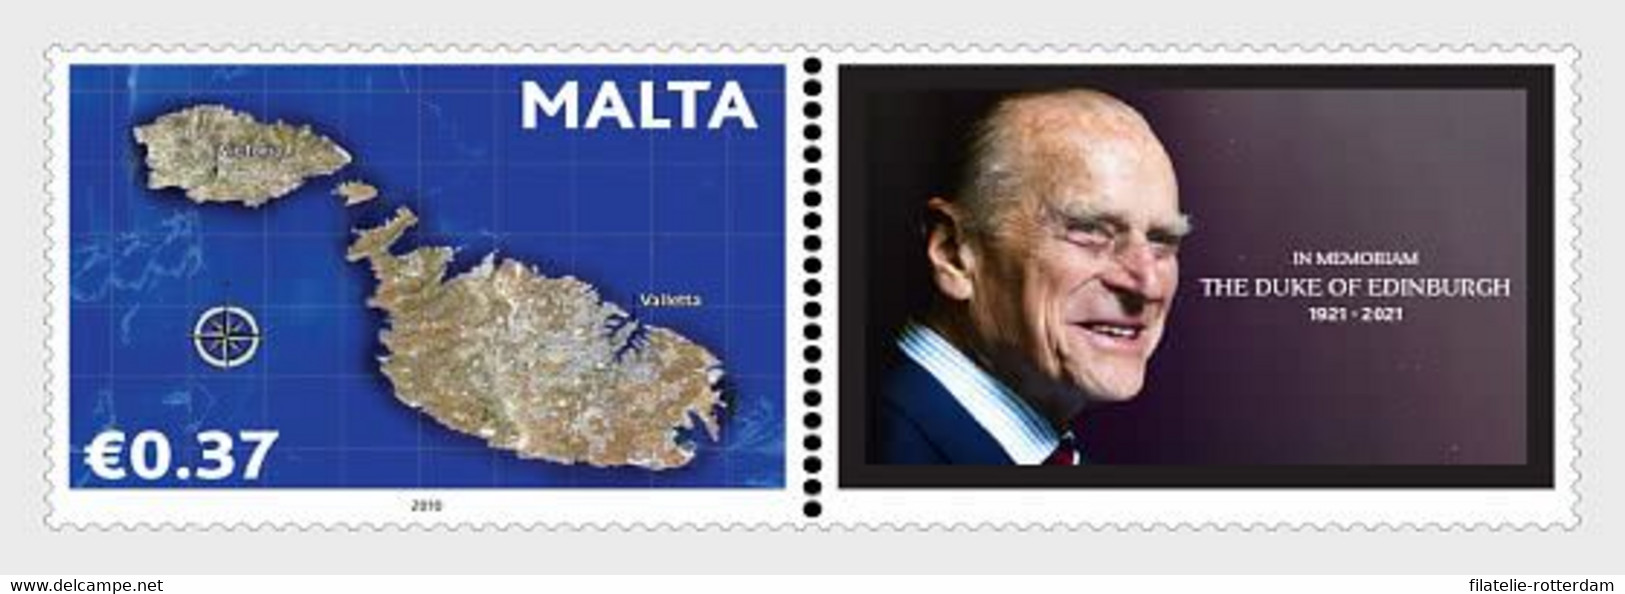 Malta / Malte - Postfris / MNH - In Memoriam, Prince Philip 2021 - Malta